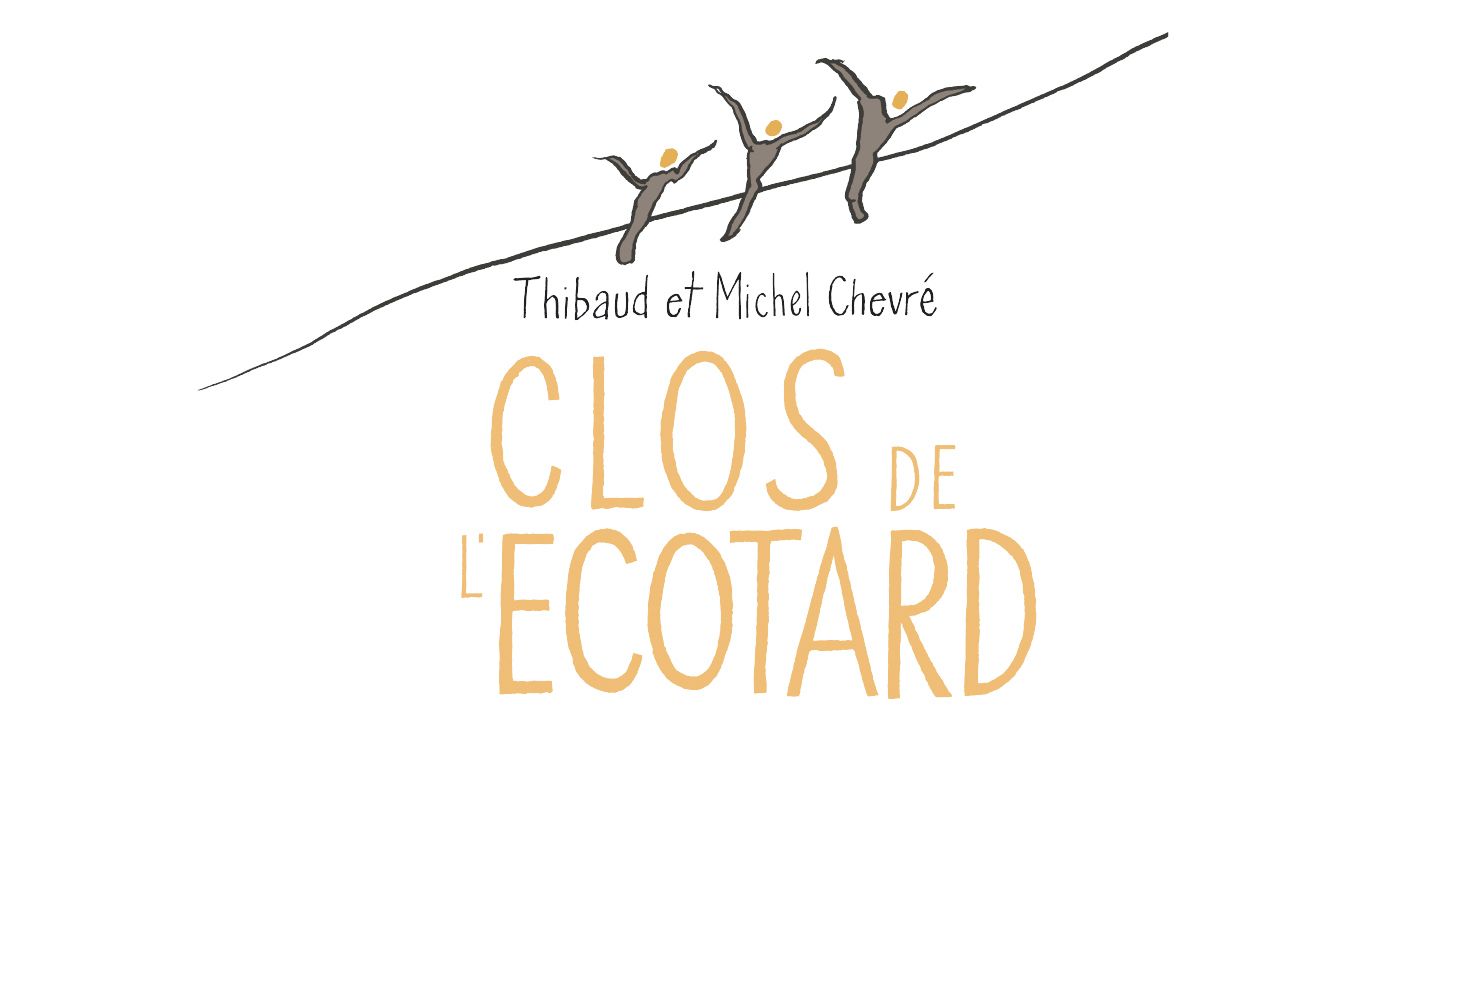 Clos de l'Ecotard